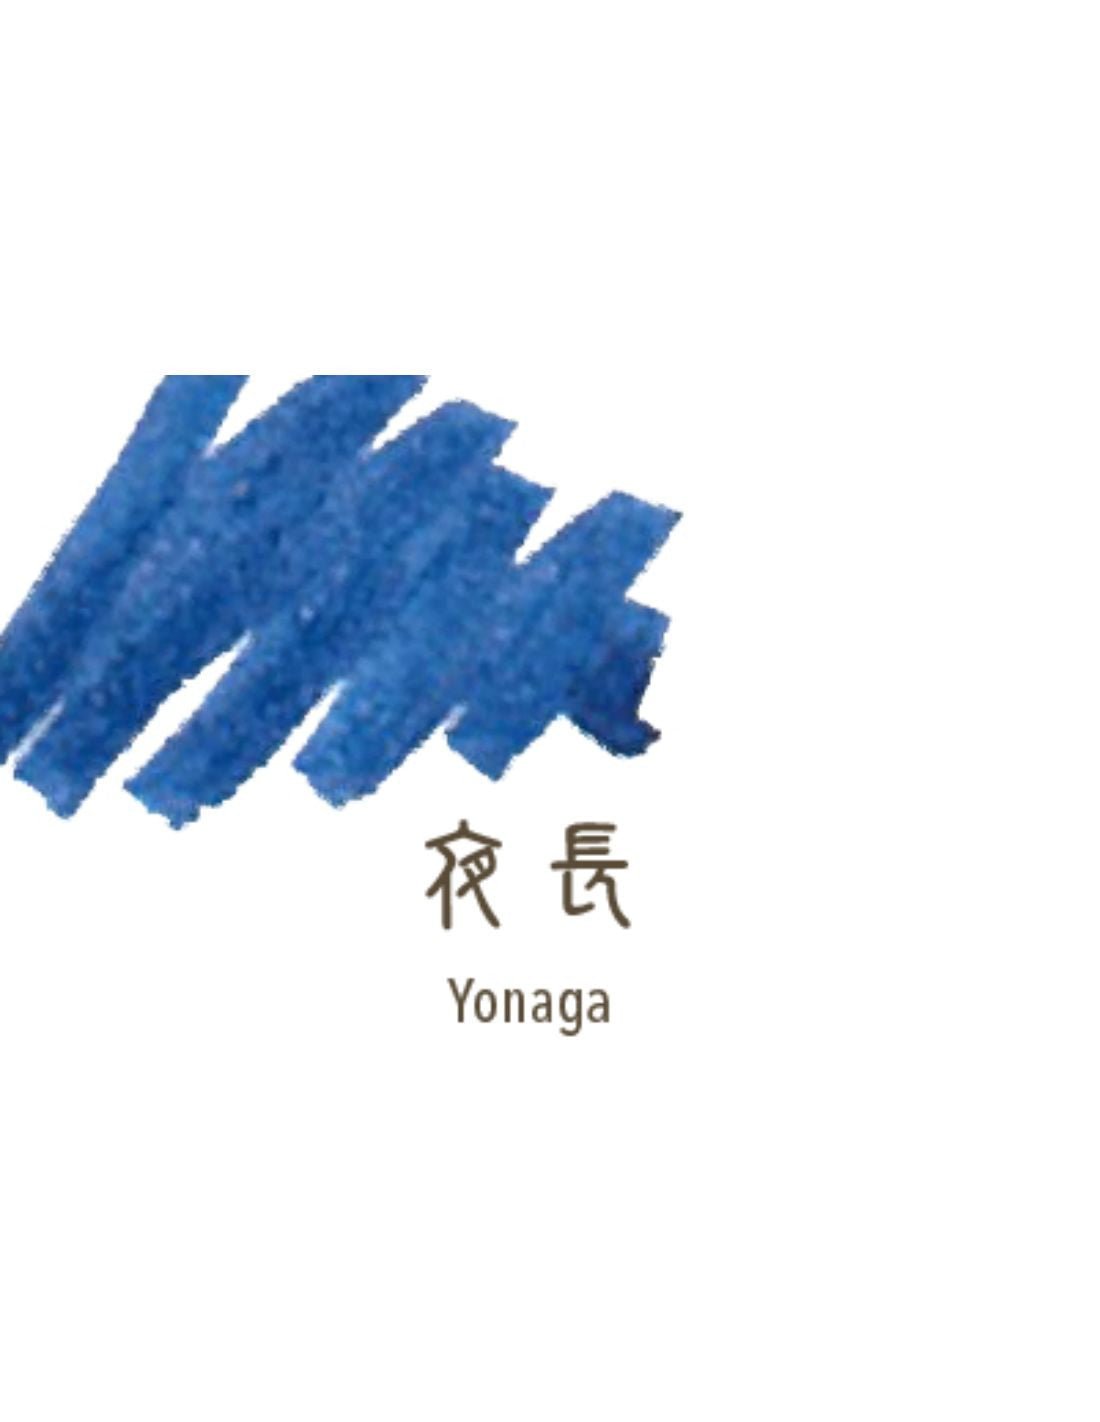 Cartouches d'encre SAILOR Shikiori - 20 ml - Yonaga - 4901680189190